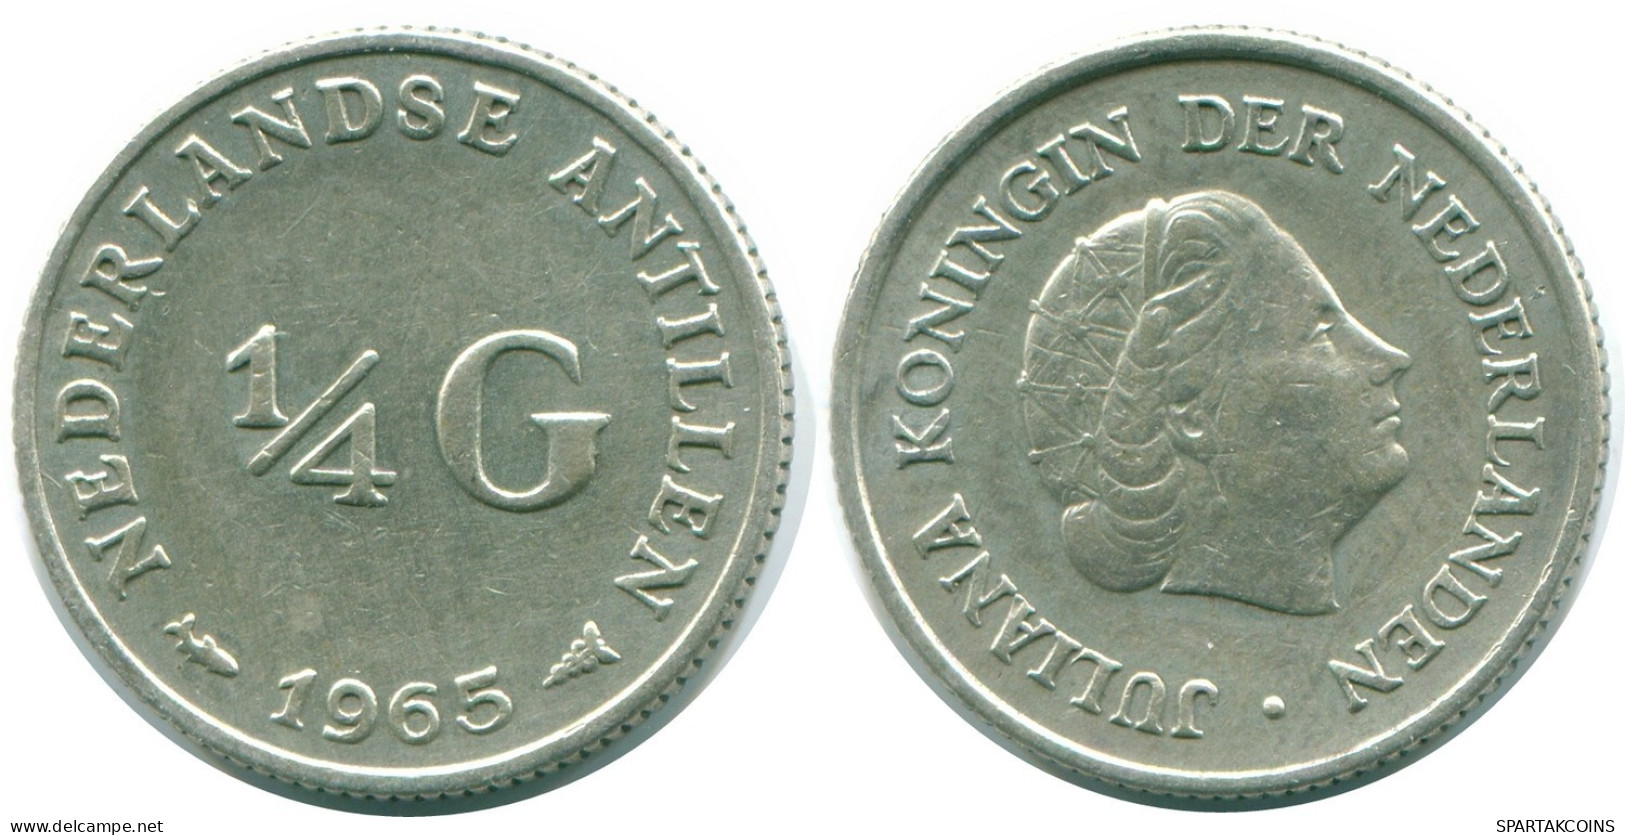 1/4 GULDEN 1965 NIEDERLÄNDISCHE ANTILLEN SILBER Koloniale Münze #NL11301.4.D.A - Niederländische Antillen